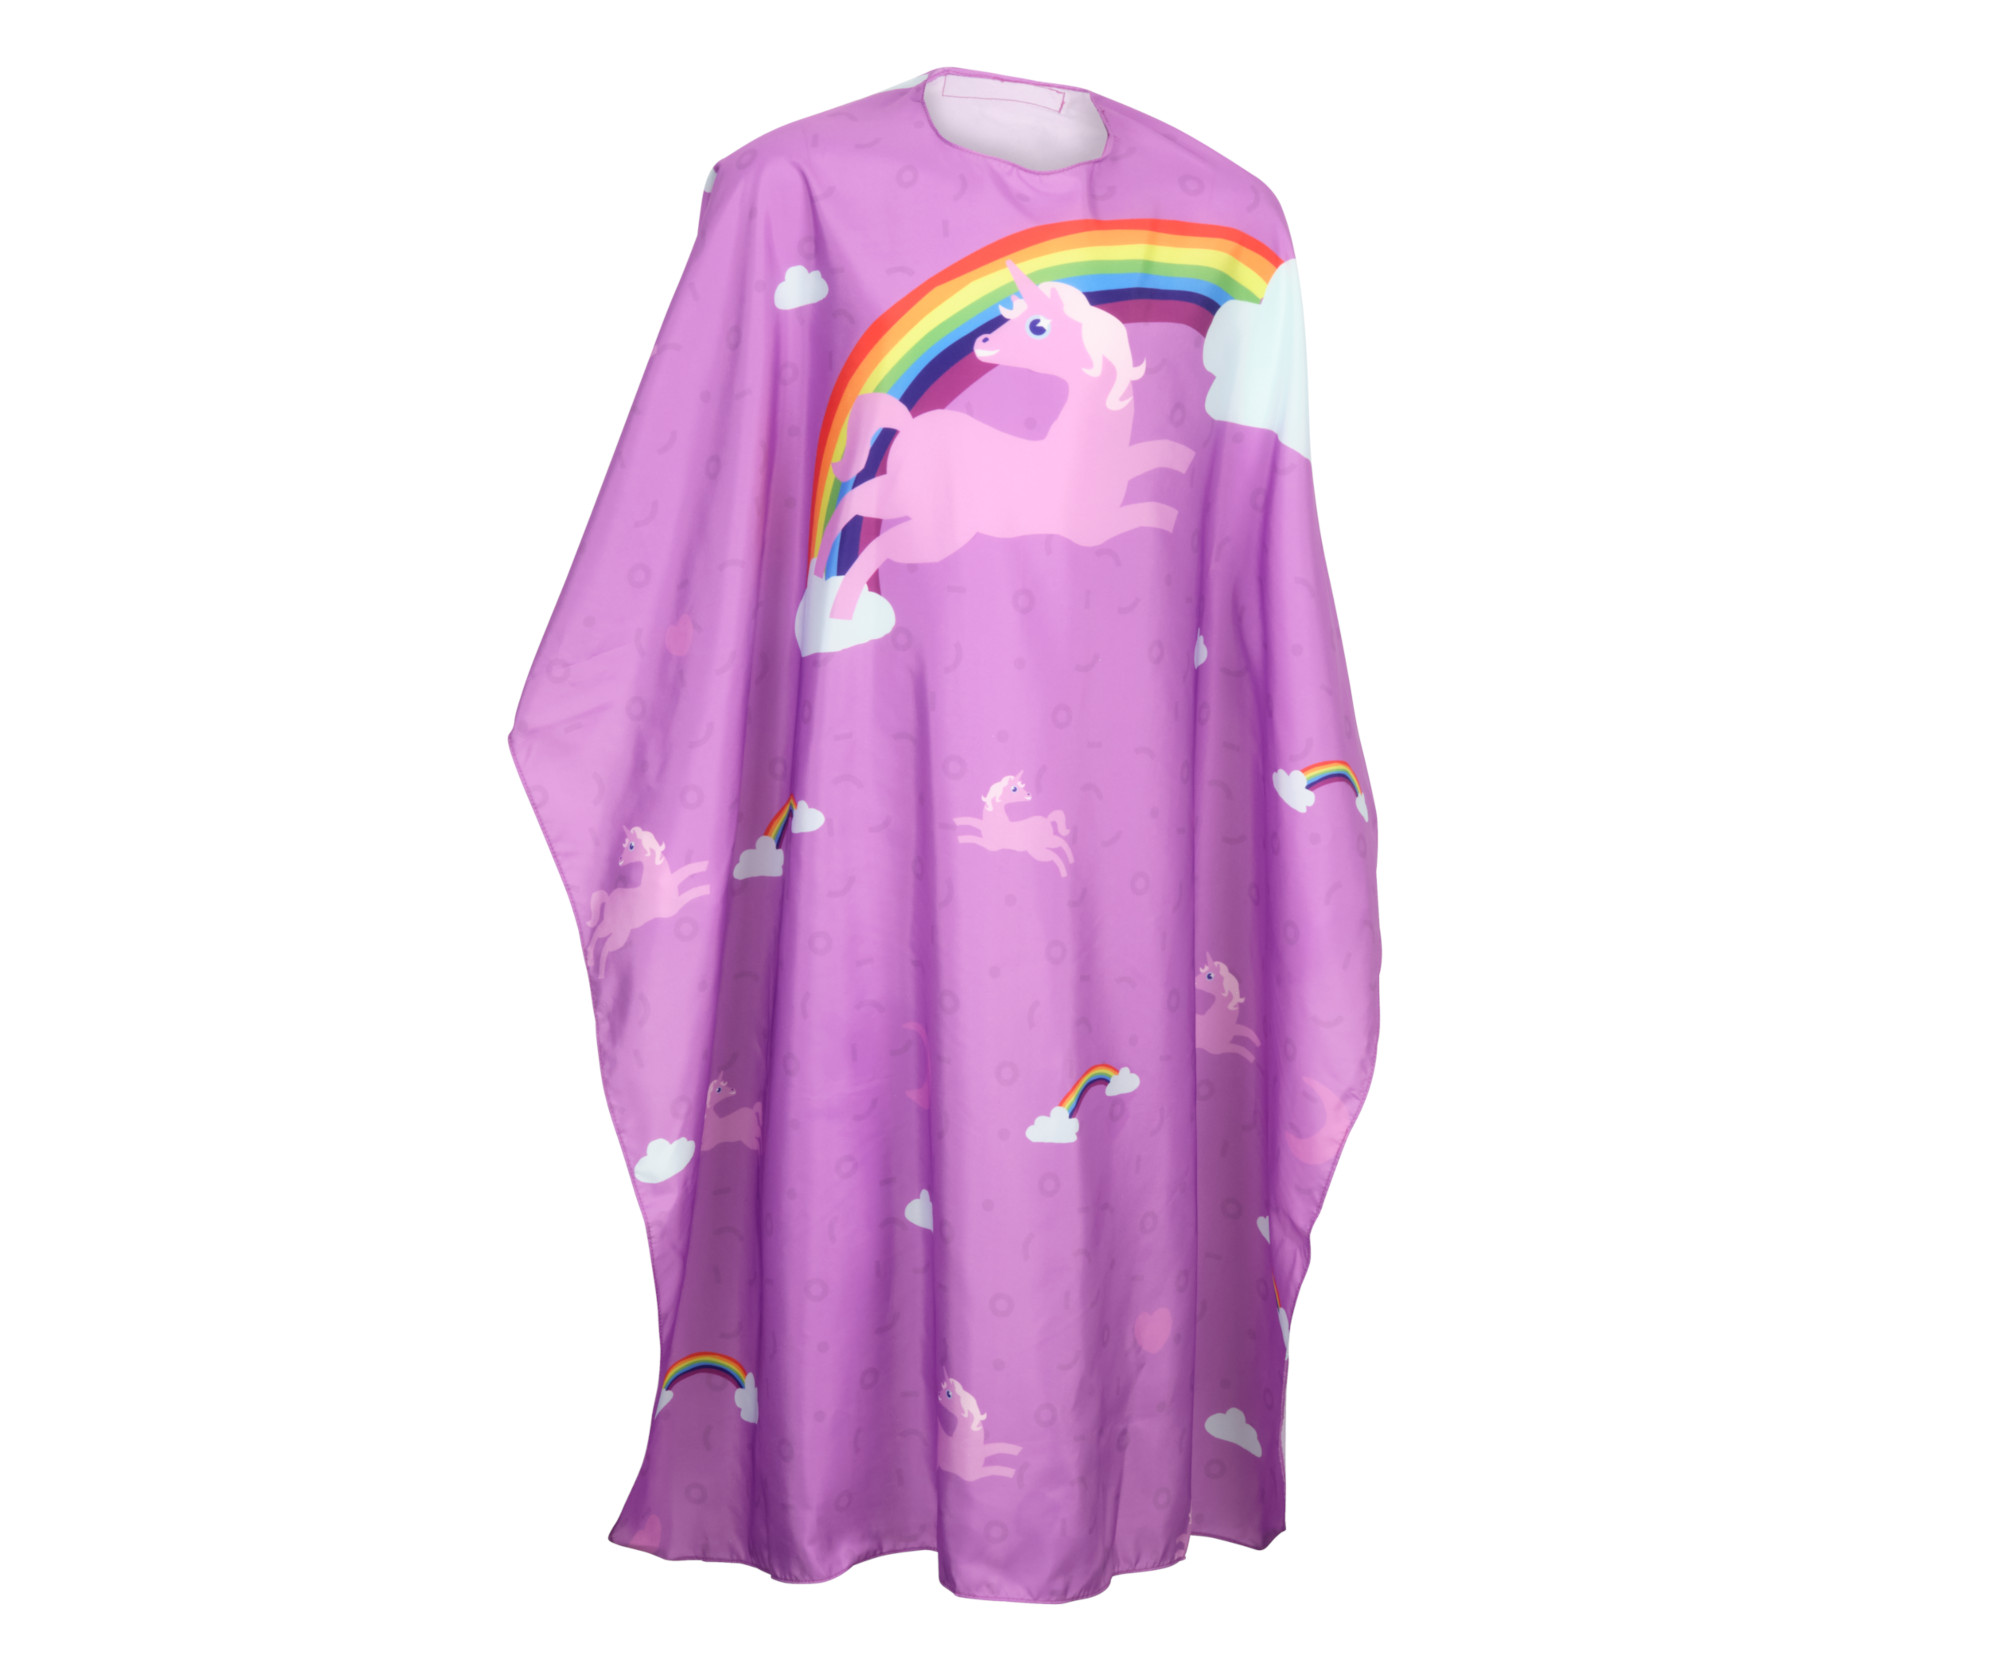 Dětská kadeřnická pláštěnka Olivia Garden - fialová, jednorožec (ID1718) + DÁREK ZDARMA